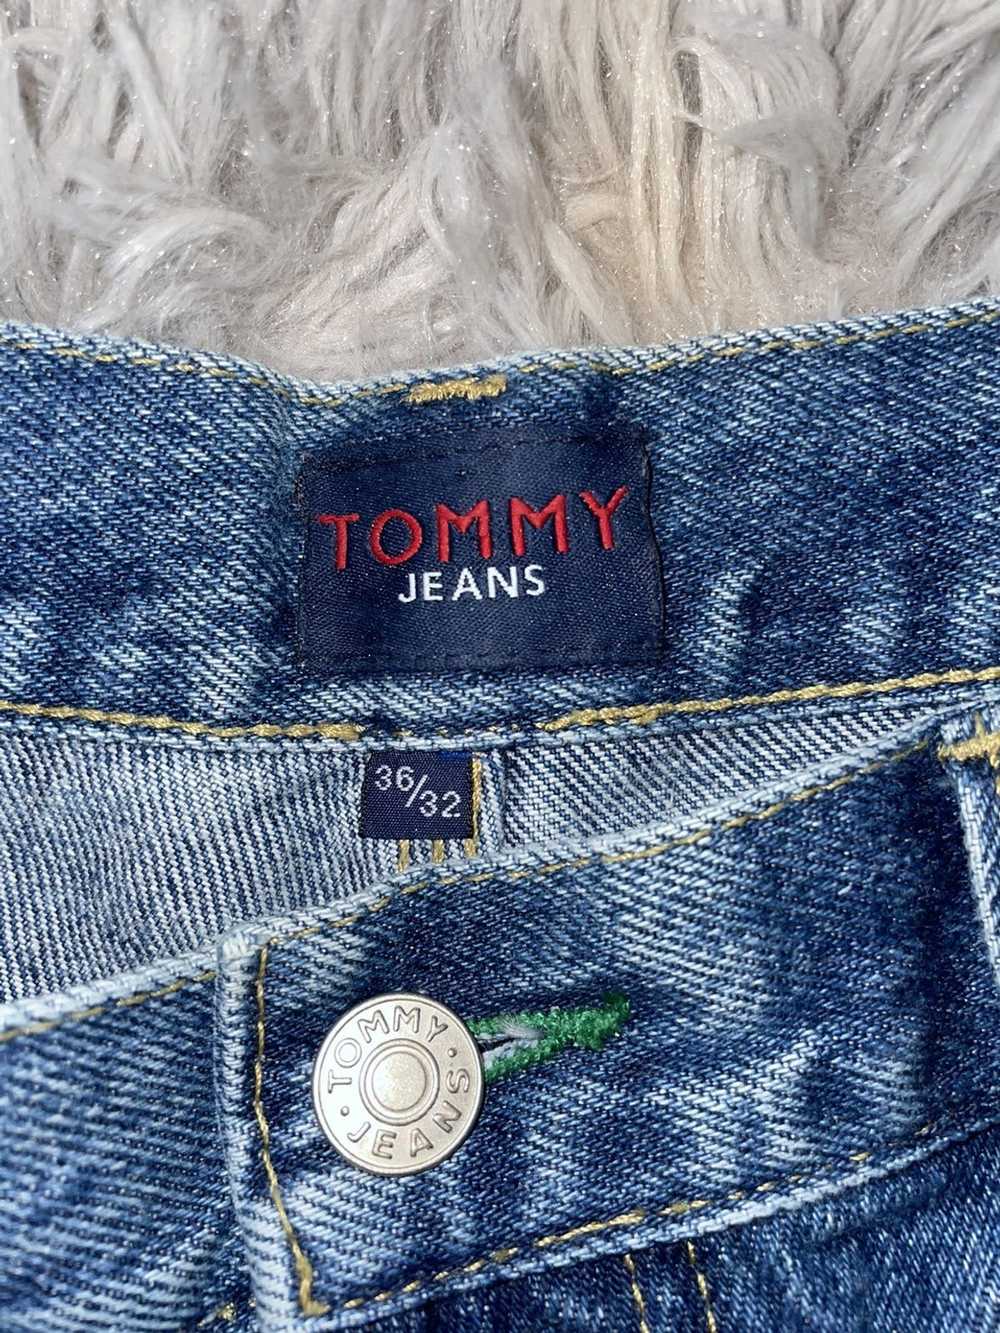 Tommy Hilfiger Tommy Hilfiger Jeans - image 5